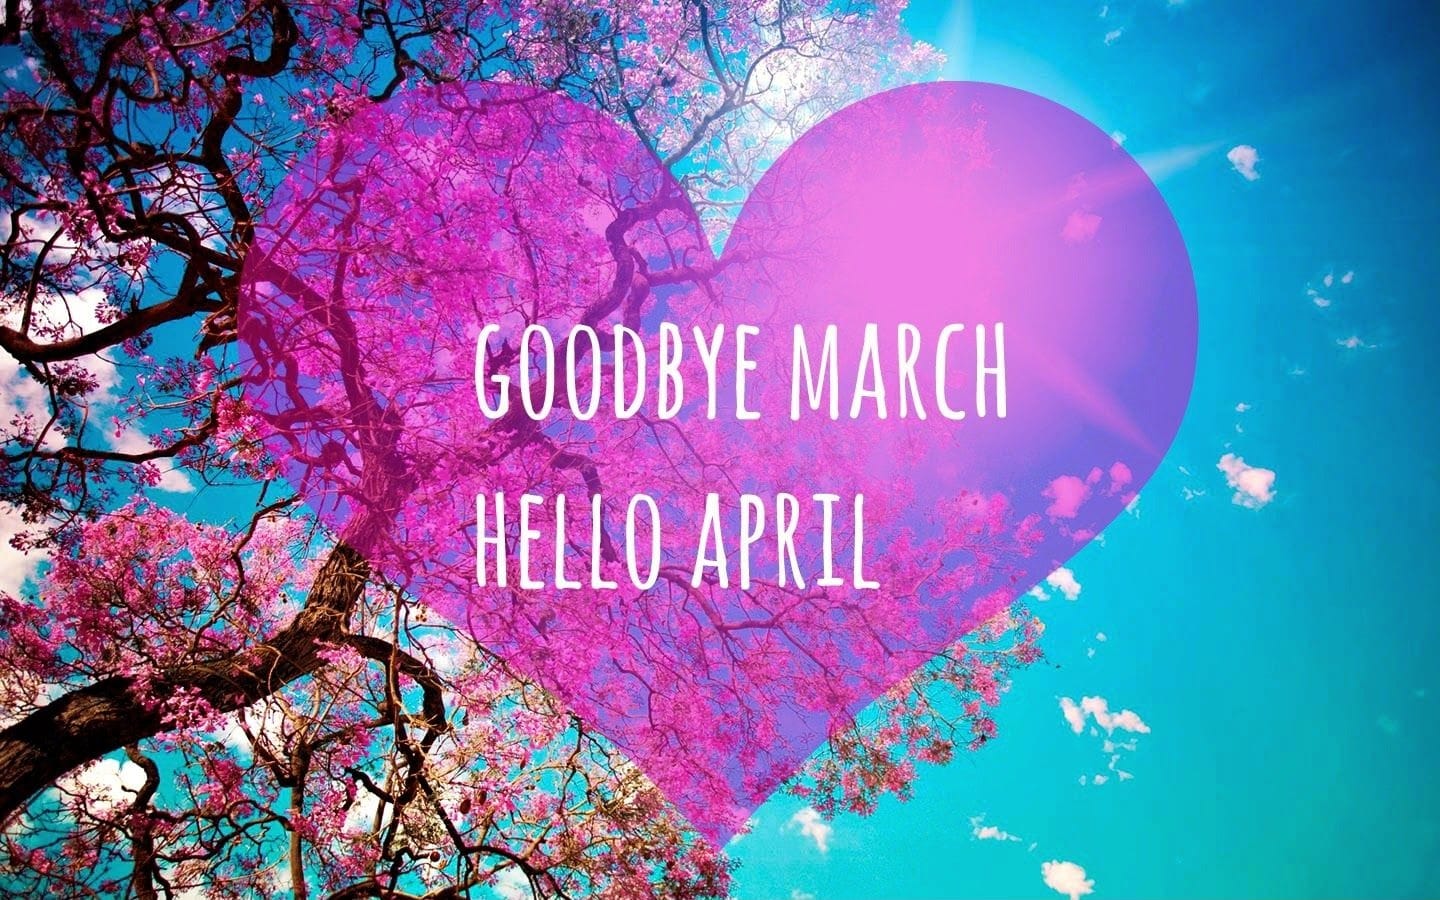 Hello April Image